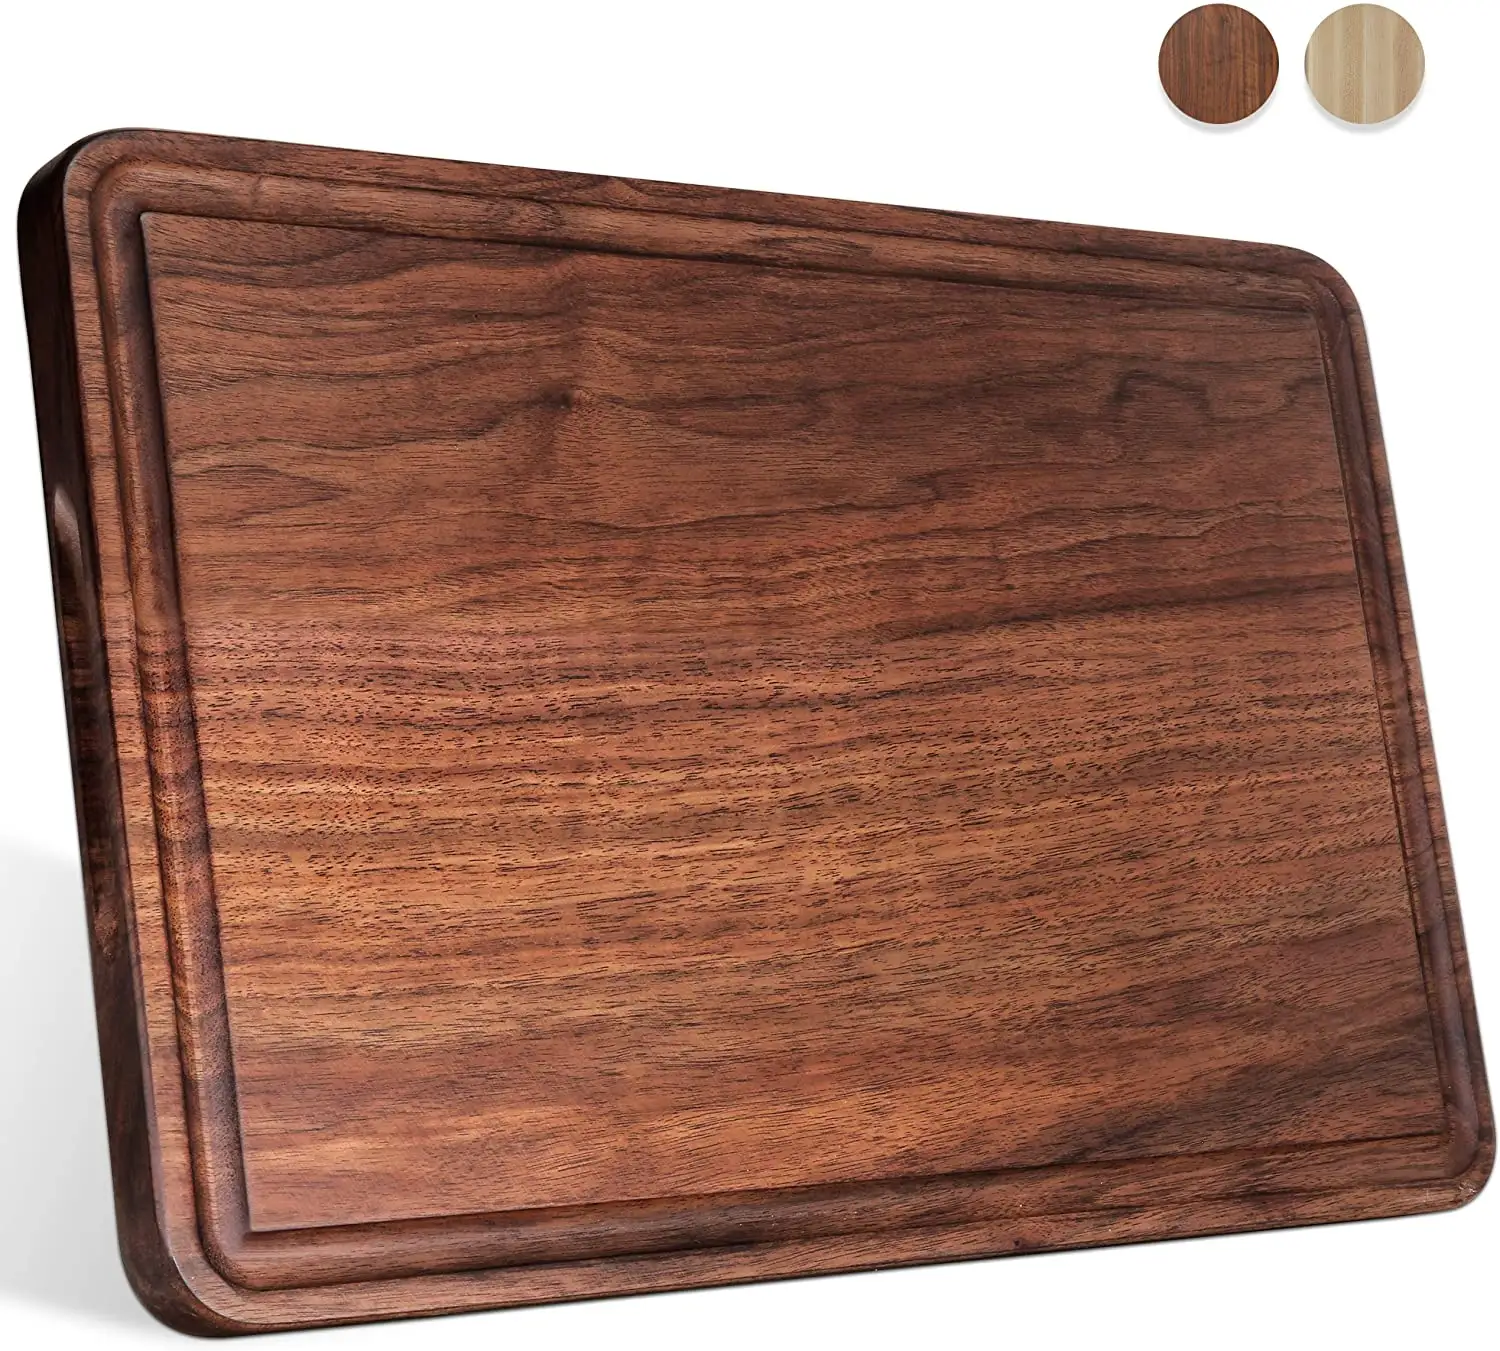 ขนาดใหญ่วอลนัทตัดไม้สำหรับห้องครัว17X11ชีส Charcuterie Board (ฟรีของขวัญกล่อง) extra หนา Reversible Butcher Block